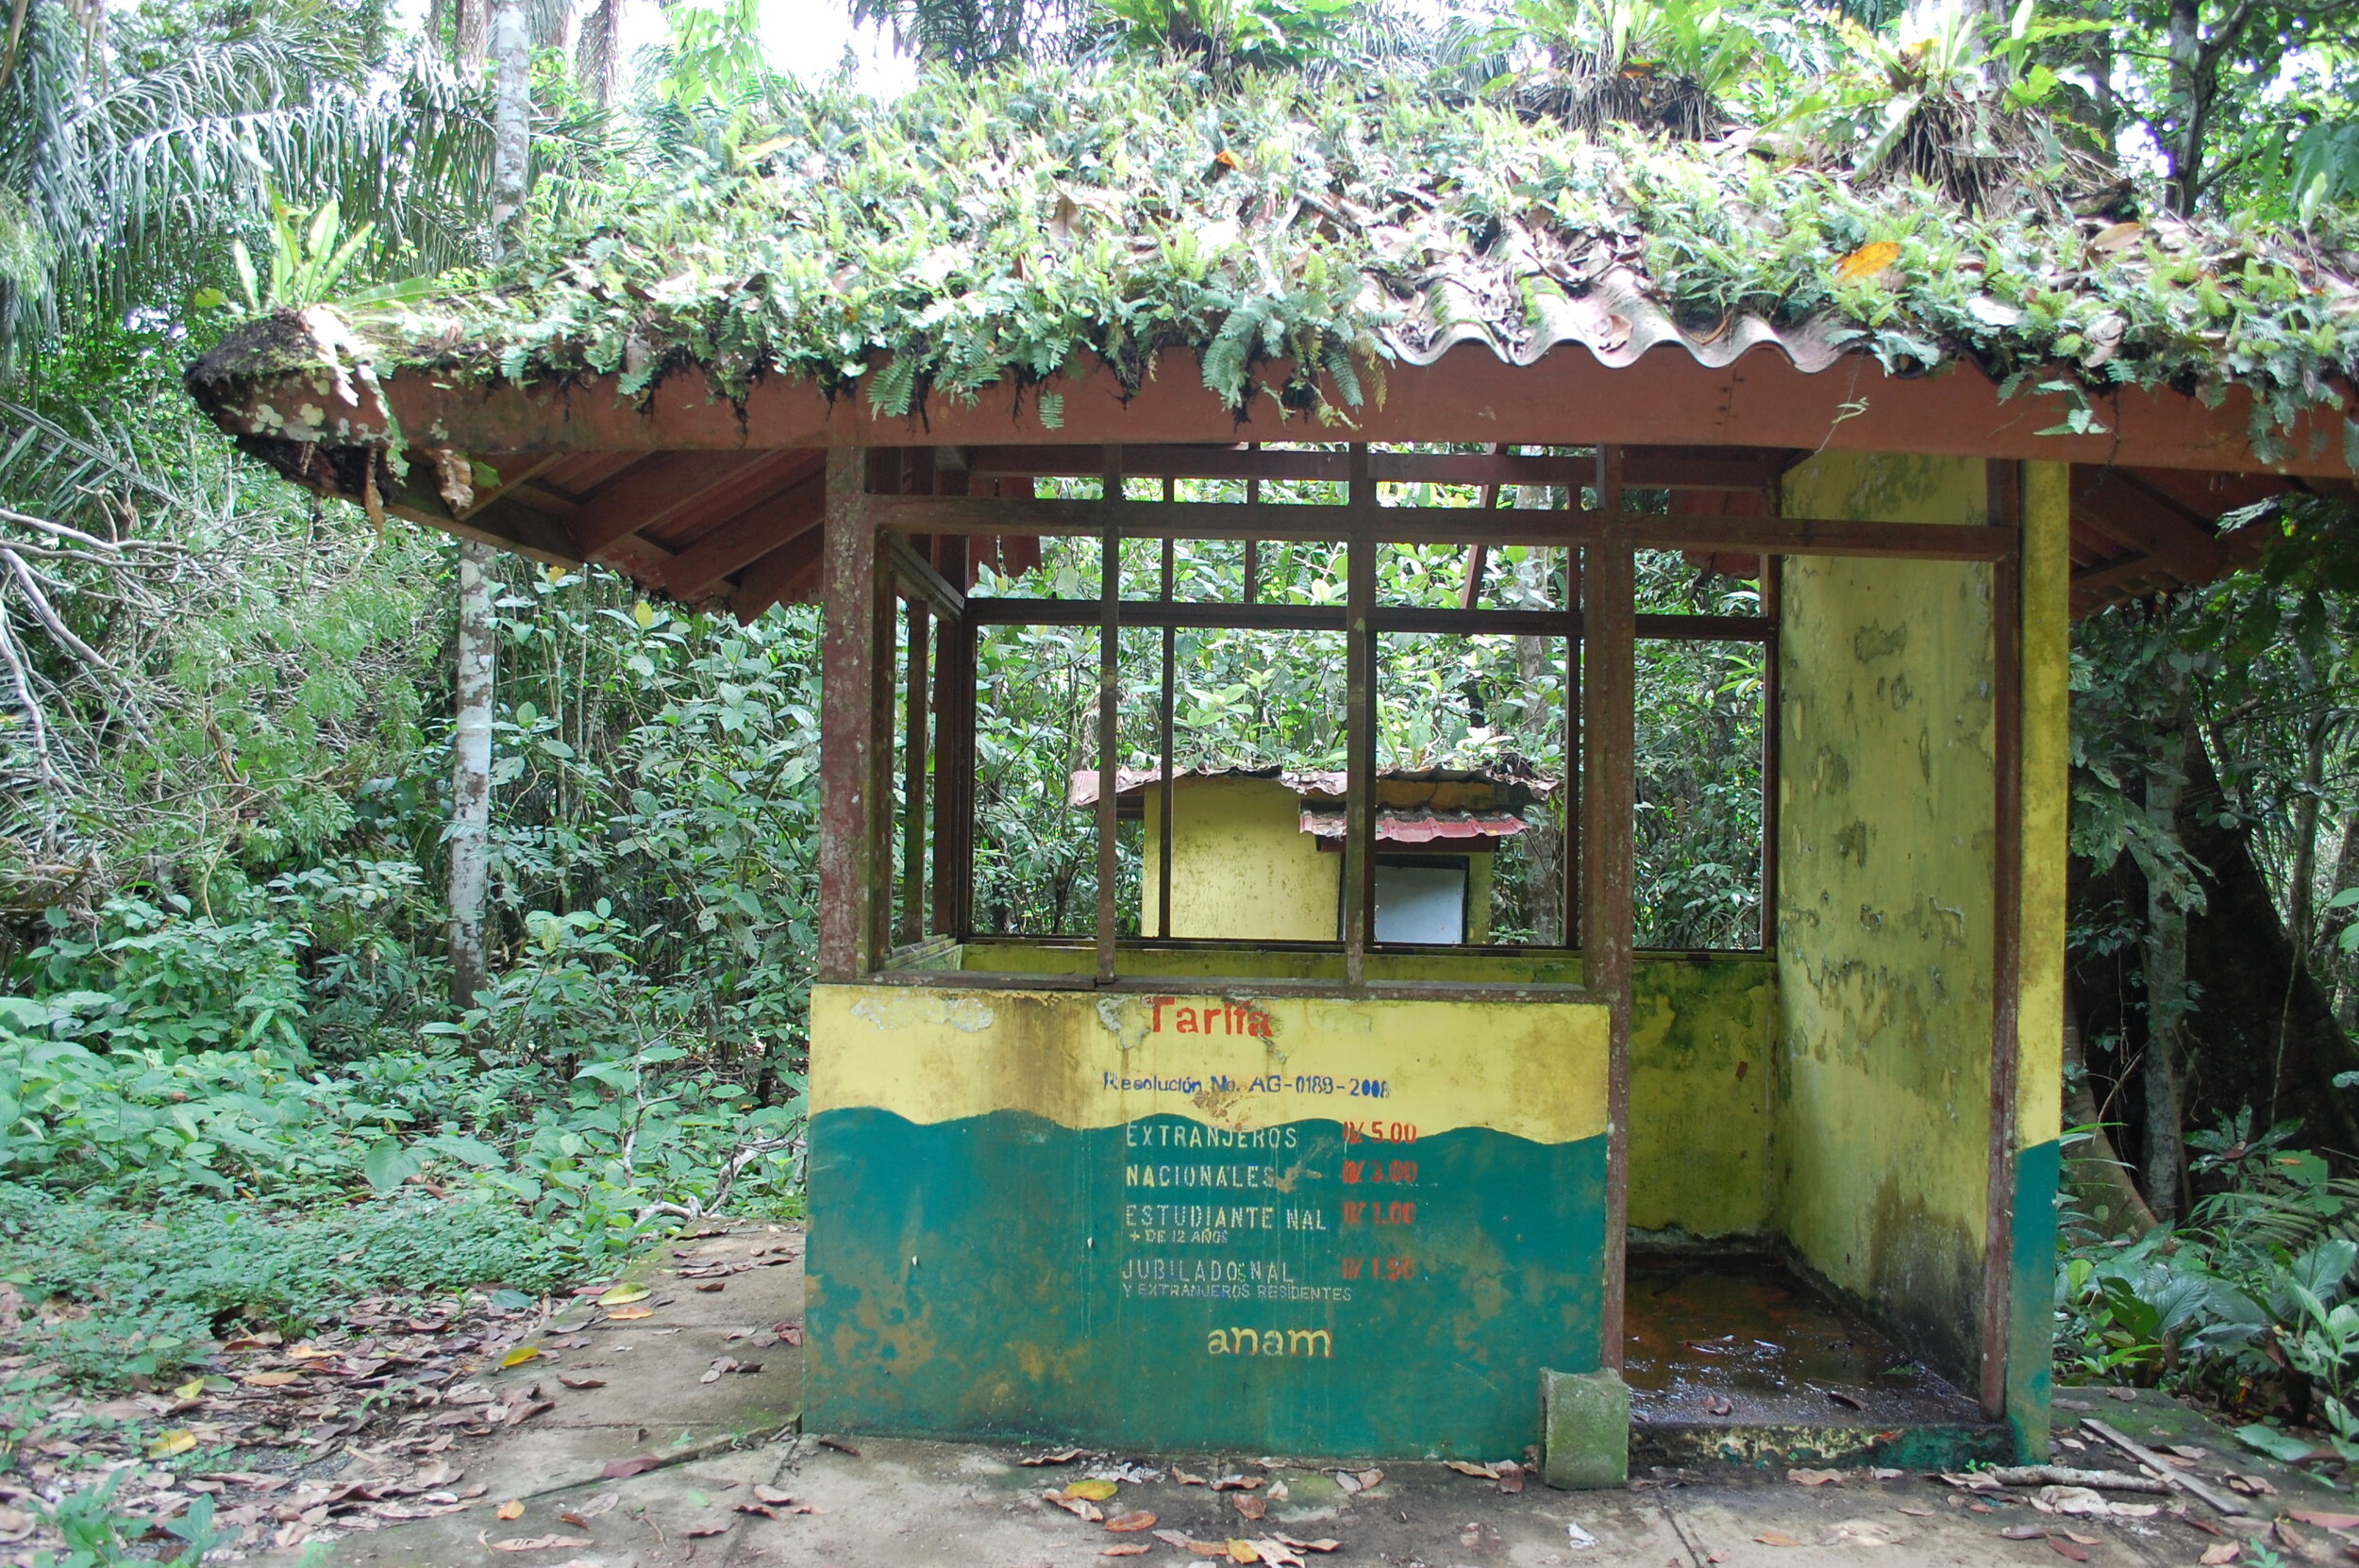 Rainforest Ticket Booth